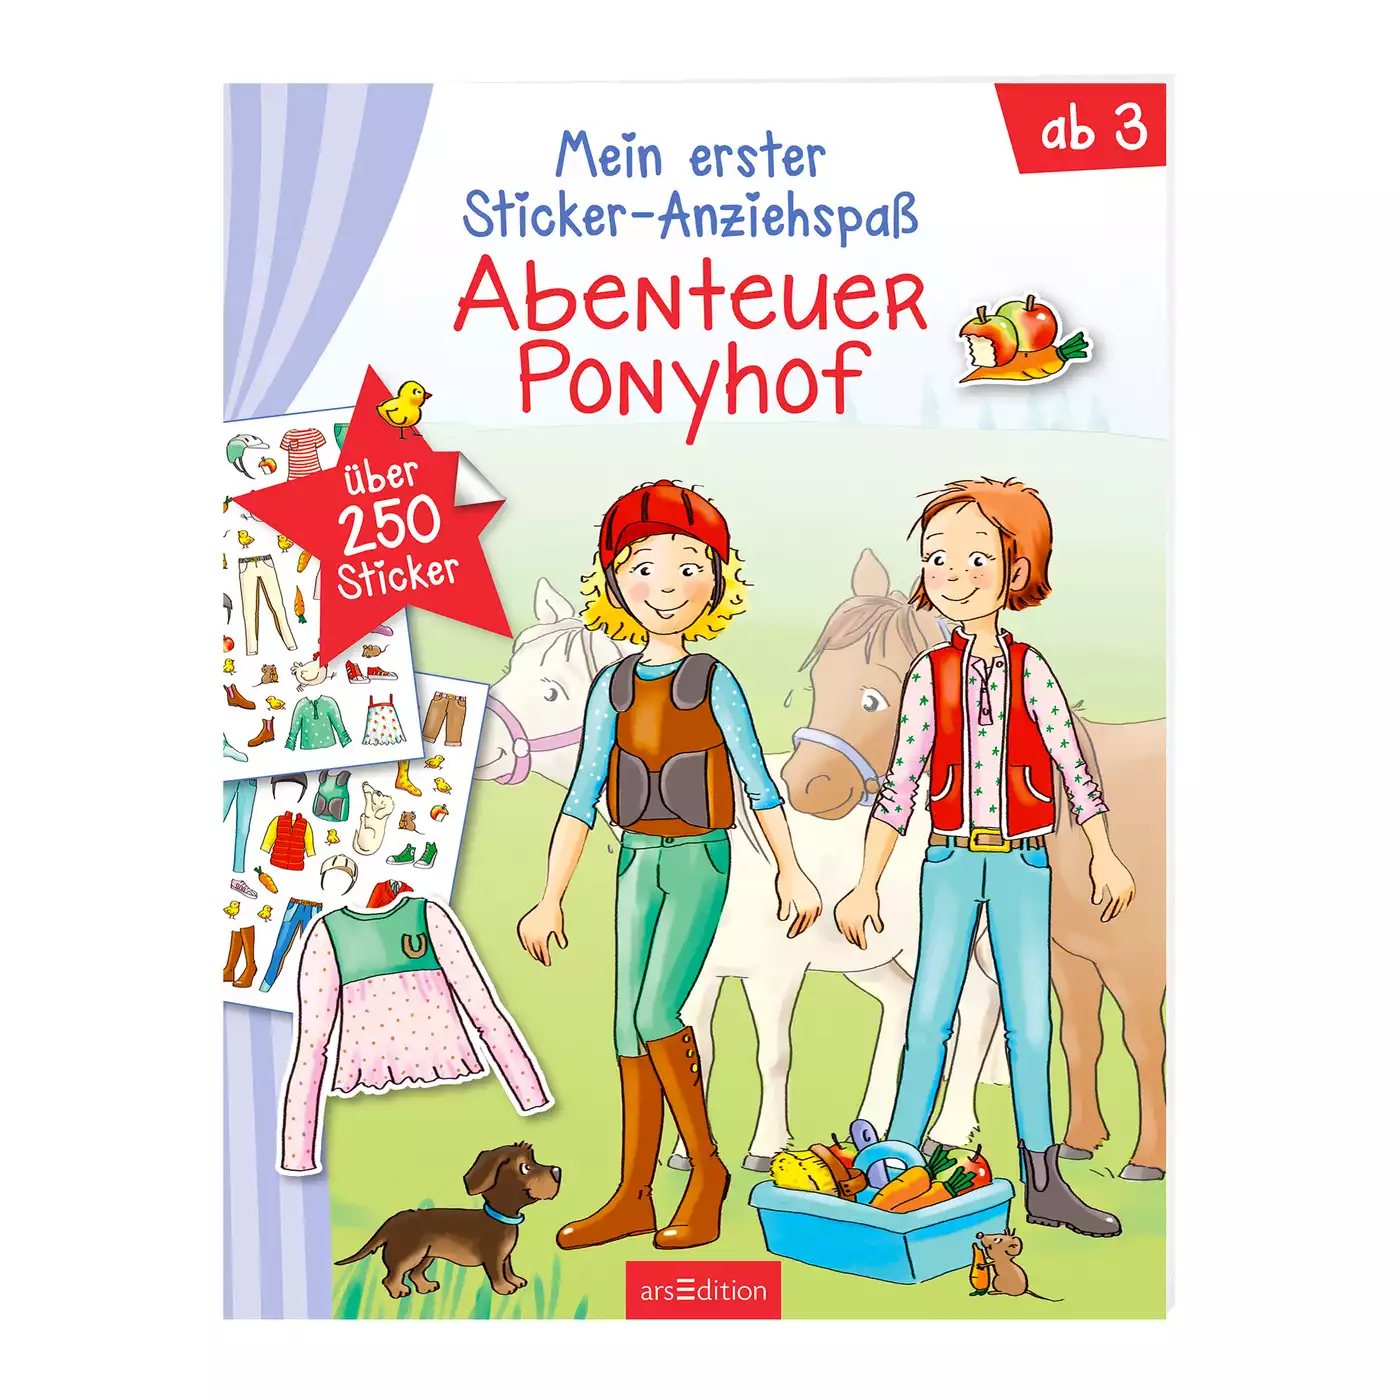 Abenteuer Ponnyhof - Mein erster Sticker Anziehspaß arsEdition 2000574913681 1